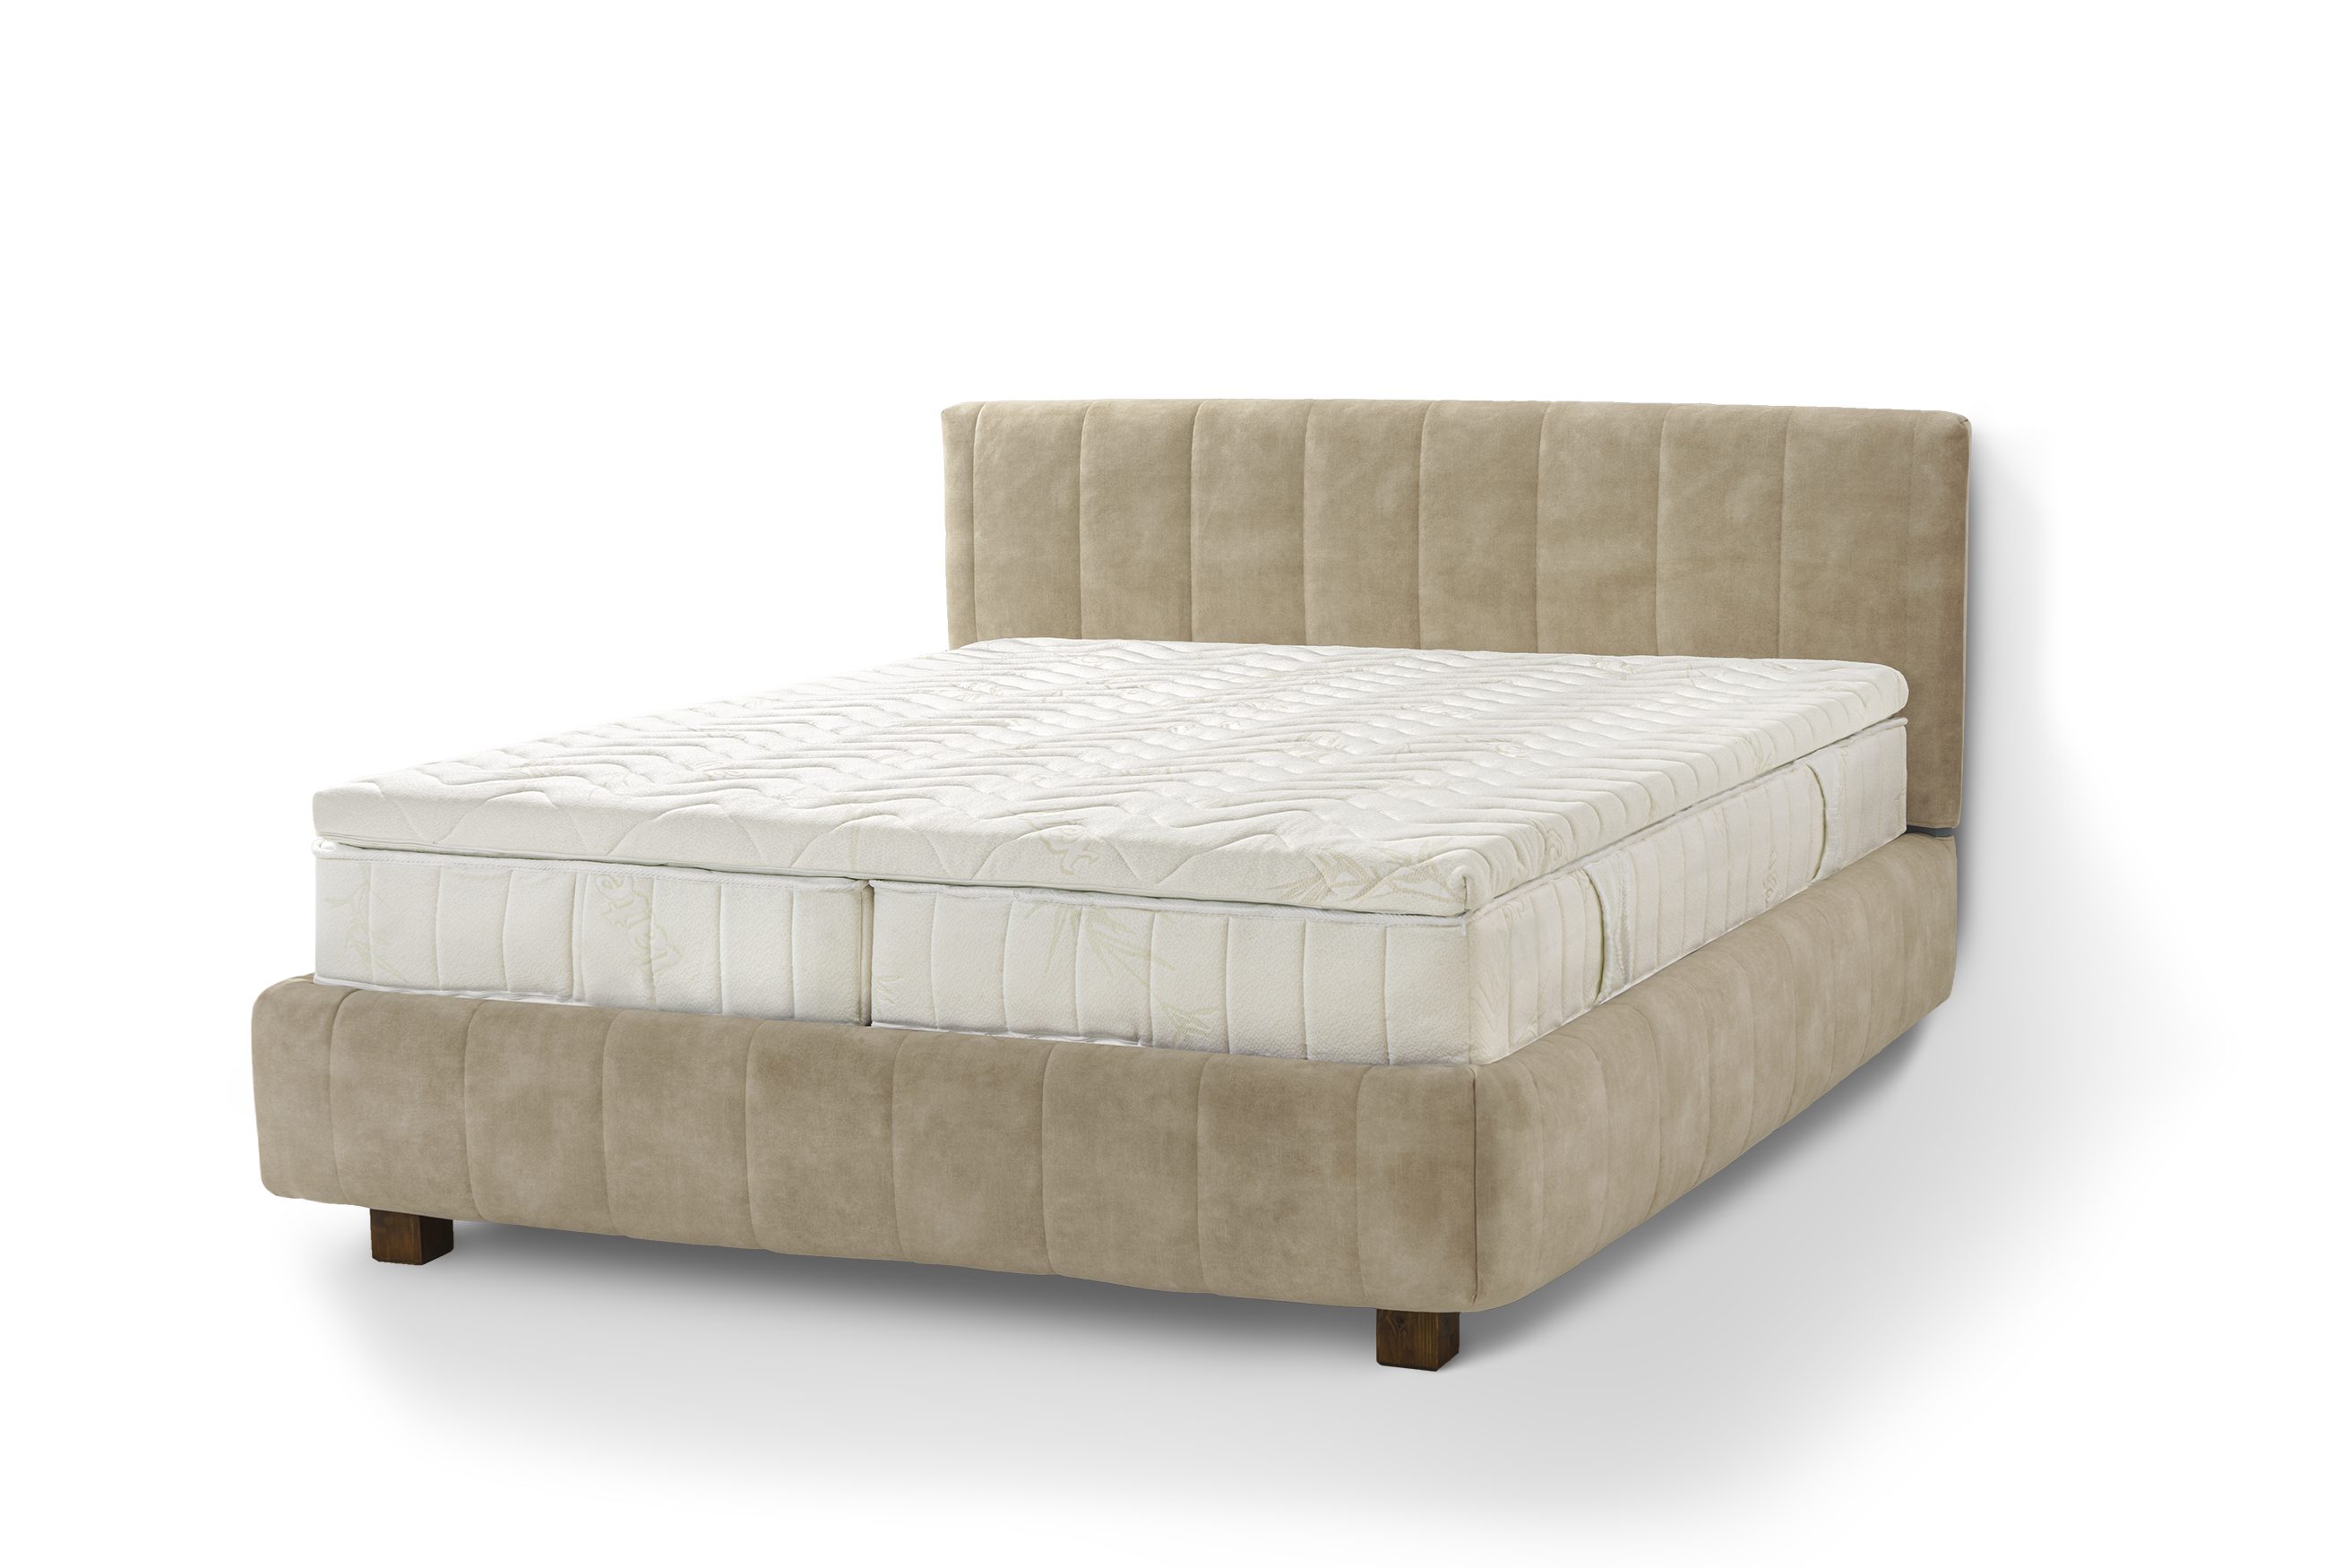 Letti Moderni Holzbett Bett Calma, hergestellt aus hochwertigem Massivholz Plüsch Sand | Jugendbetten